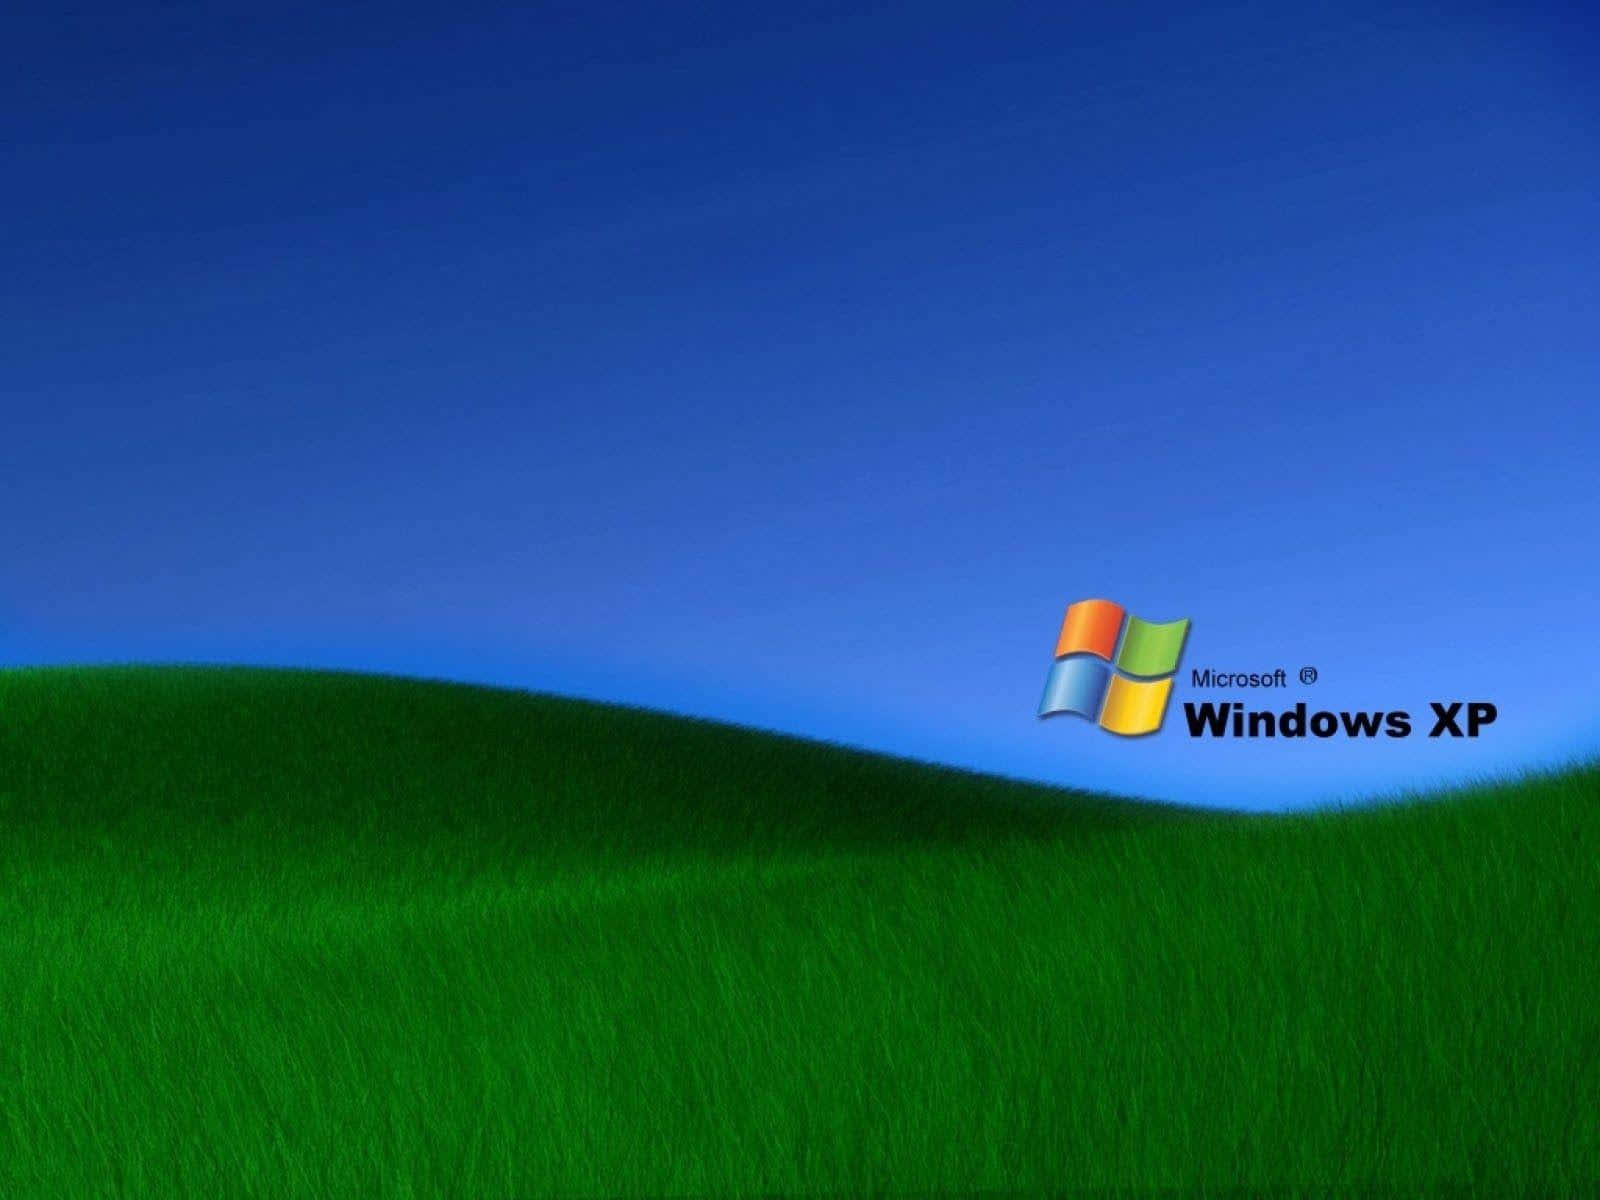 Logoet for det oprindelige Windows XP. Wallpaper